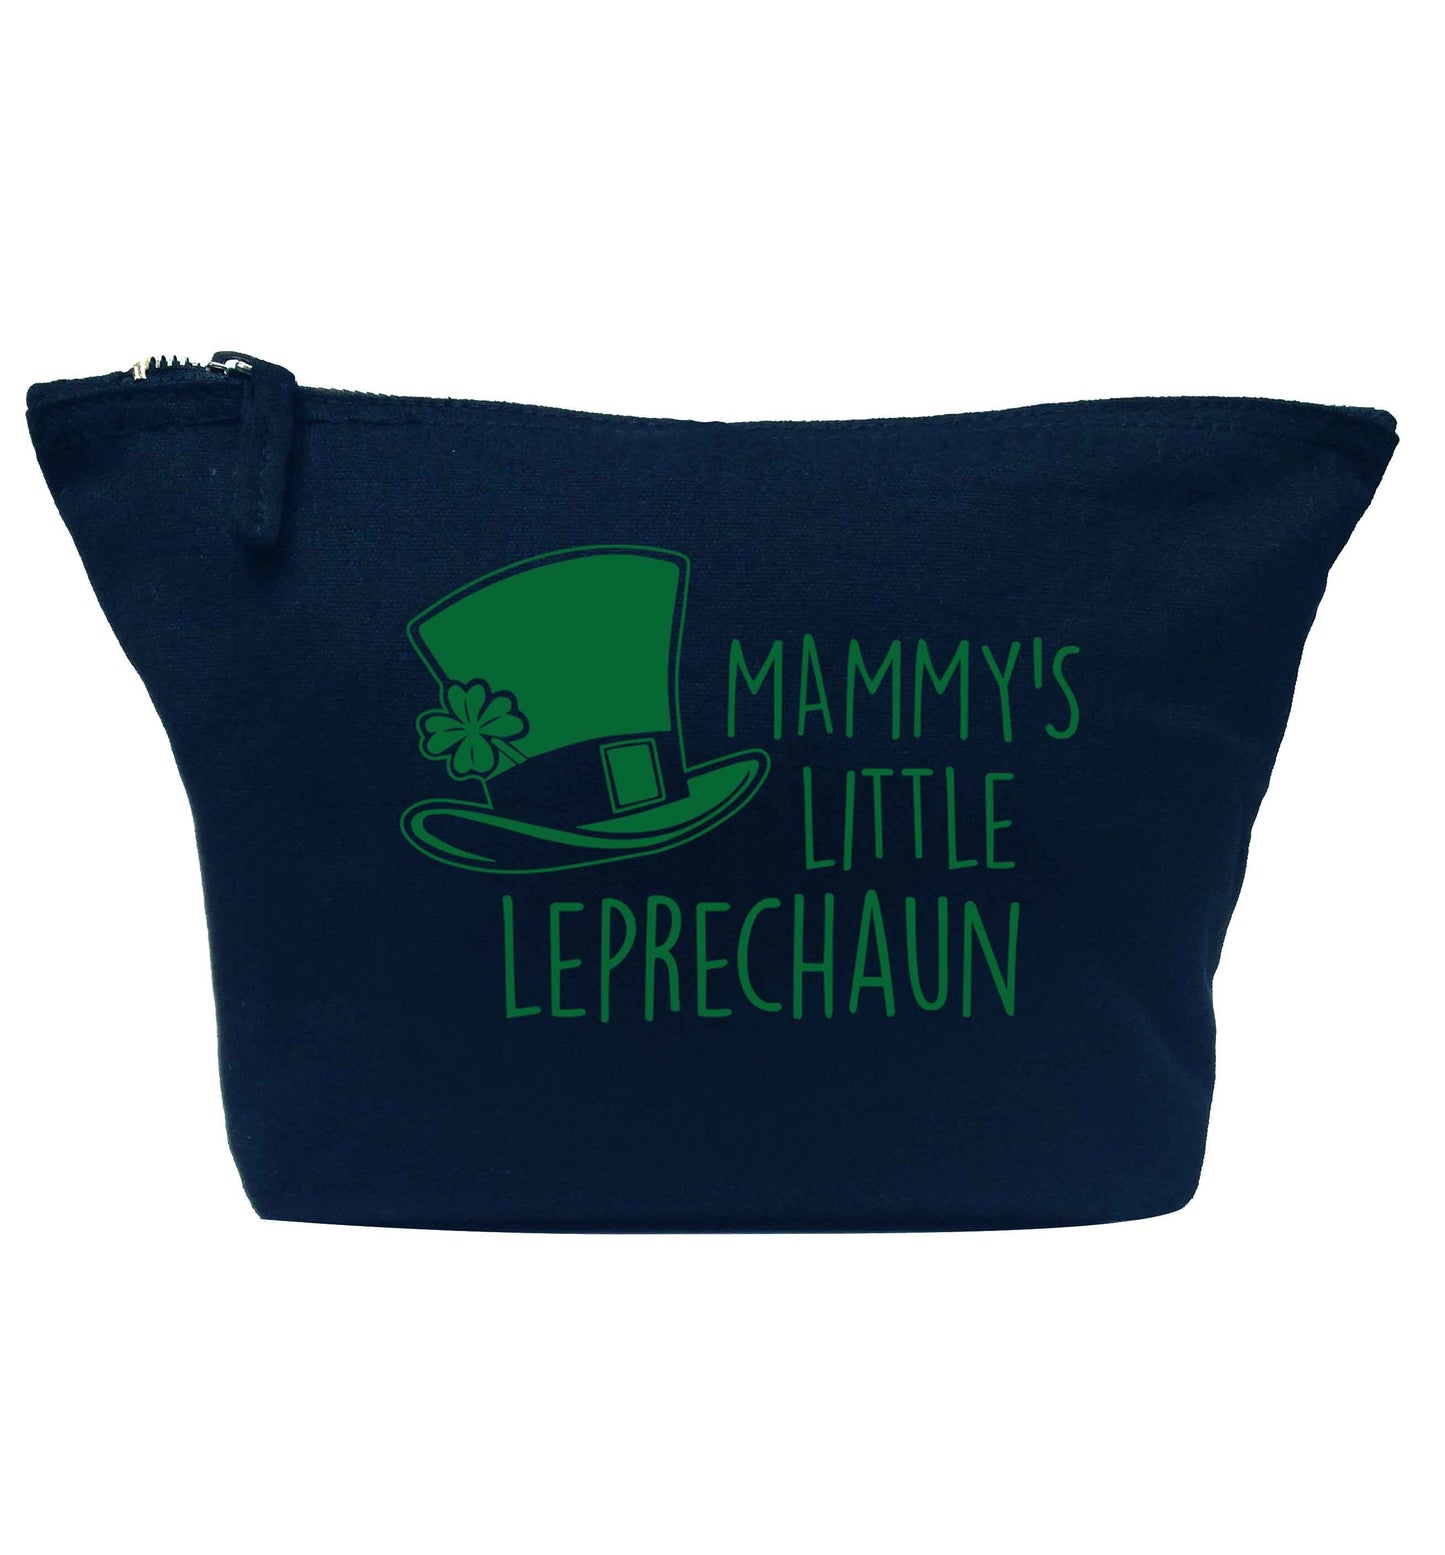 Mammy's little leprechaun navy makeup bag